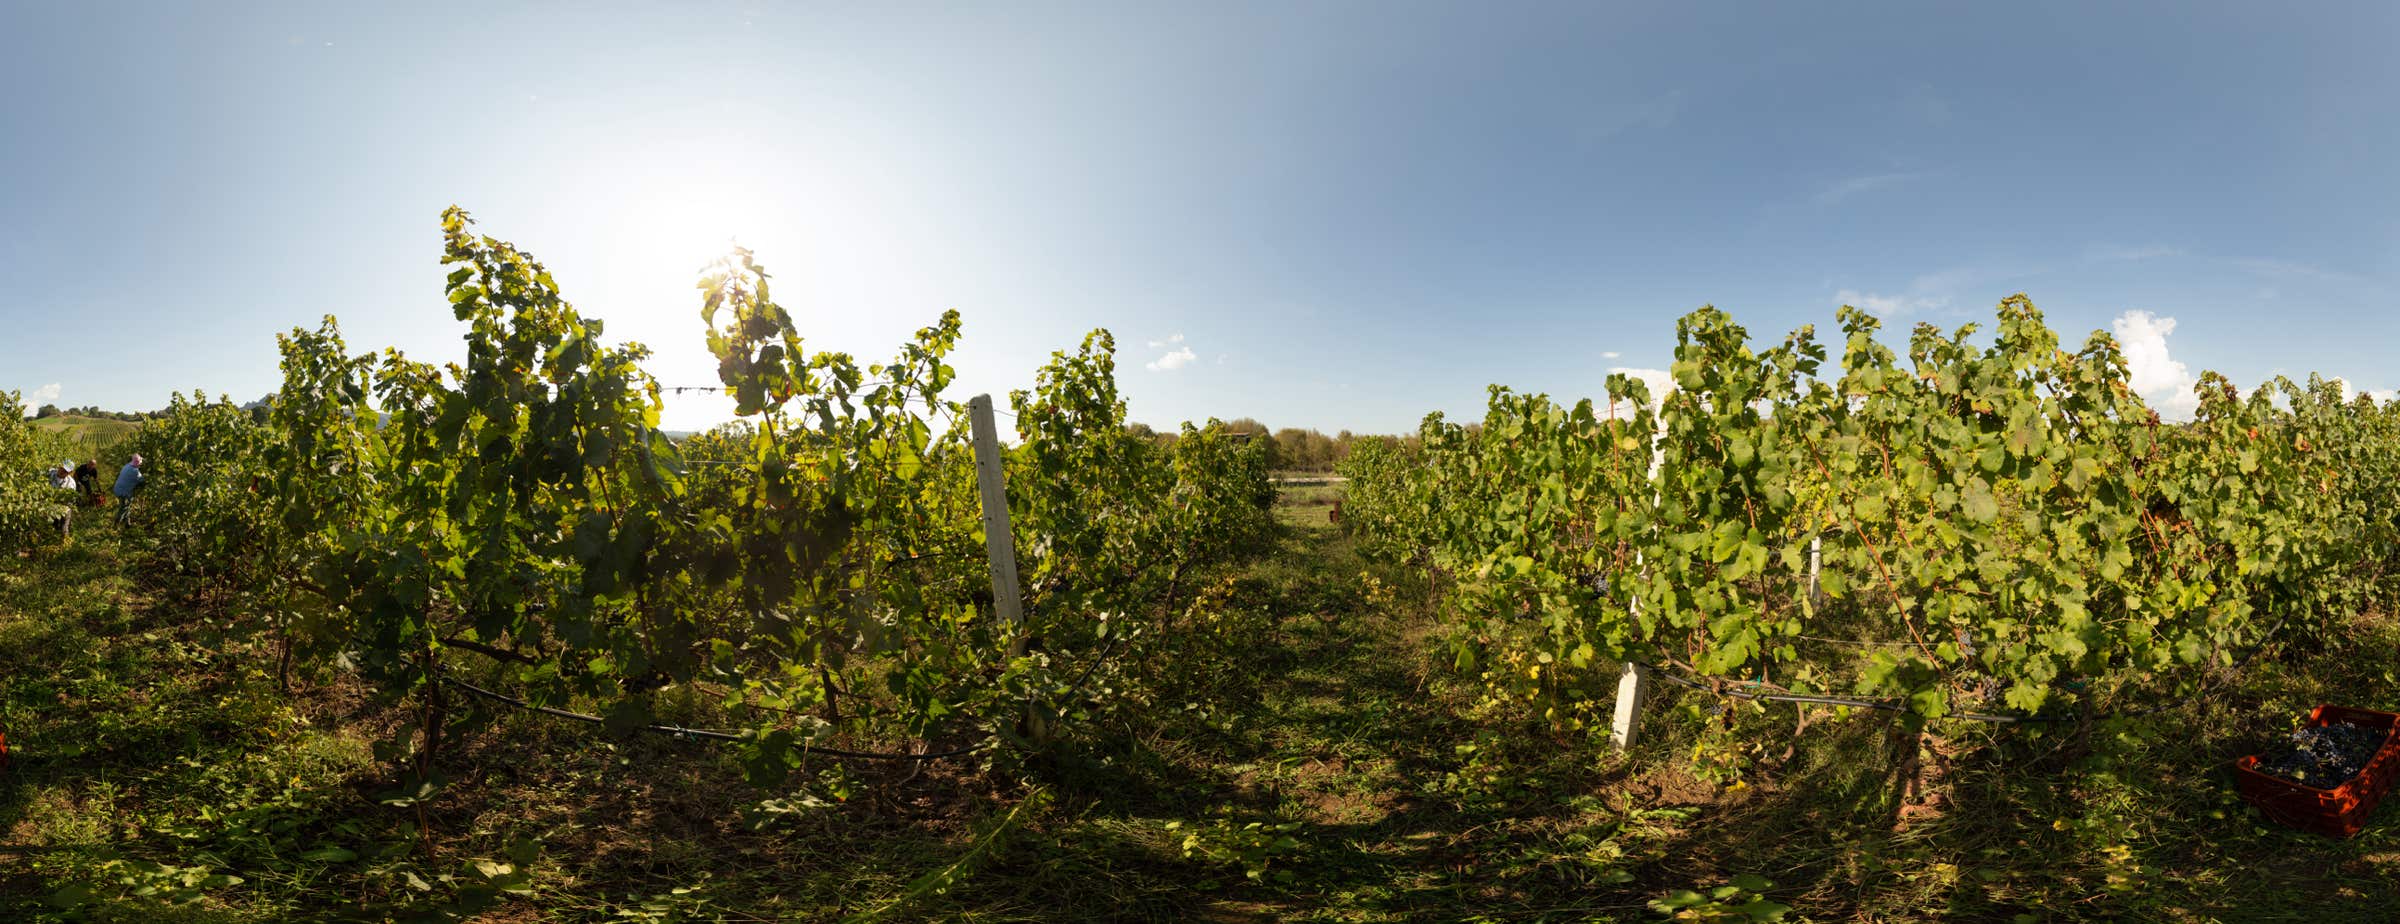 L'immagine mostra una vista a 360° tra le viti di un vigneto. Gli operai raccolgono l'uva.